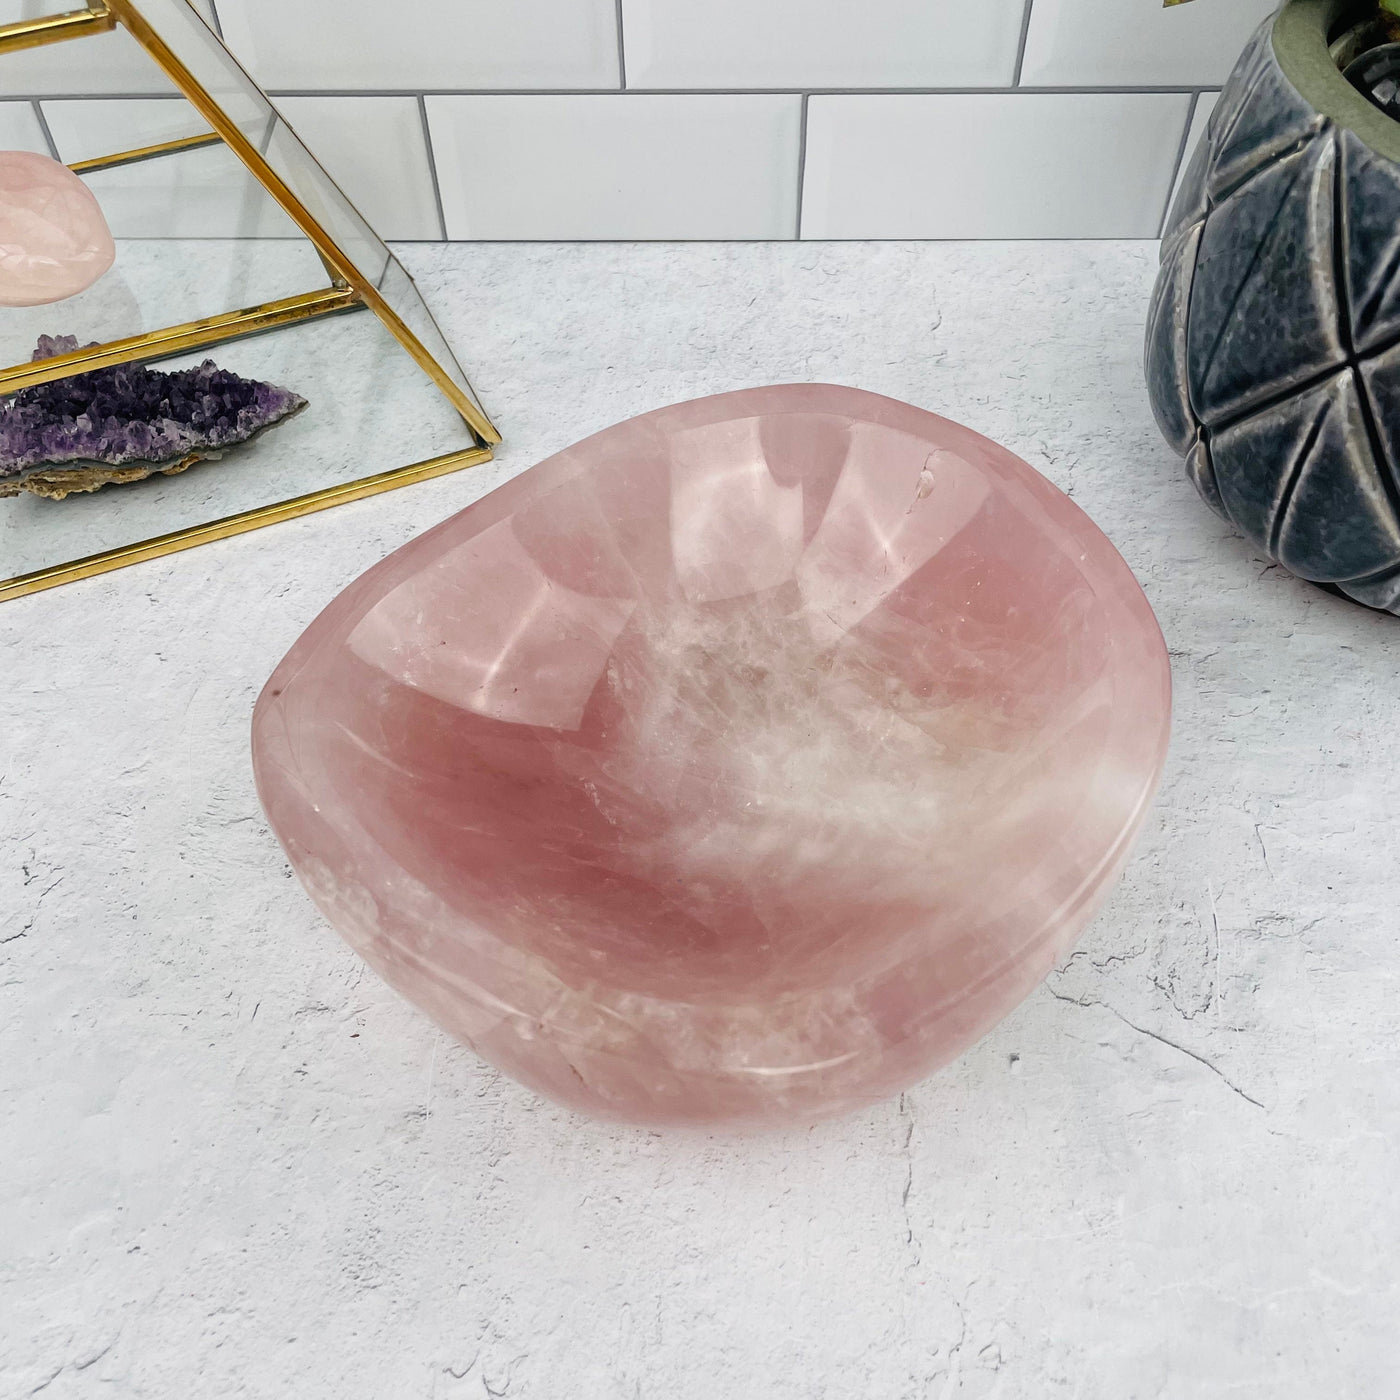 rose quartz bowl displayed as home decor